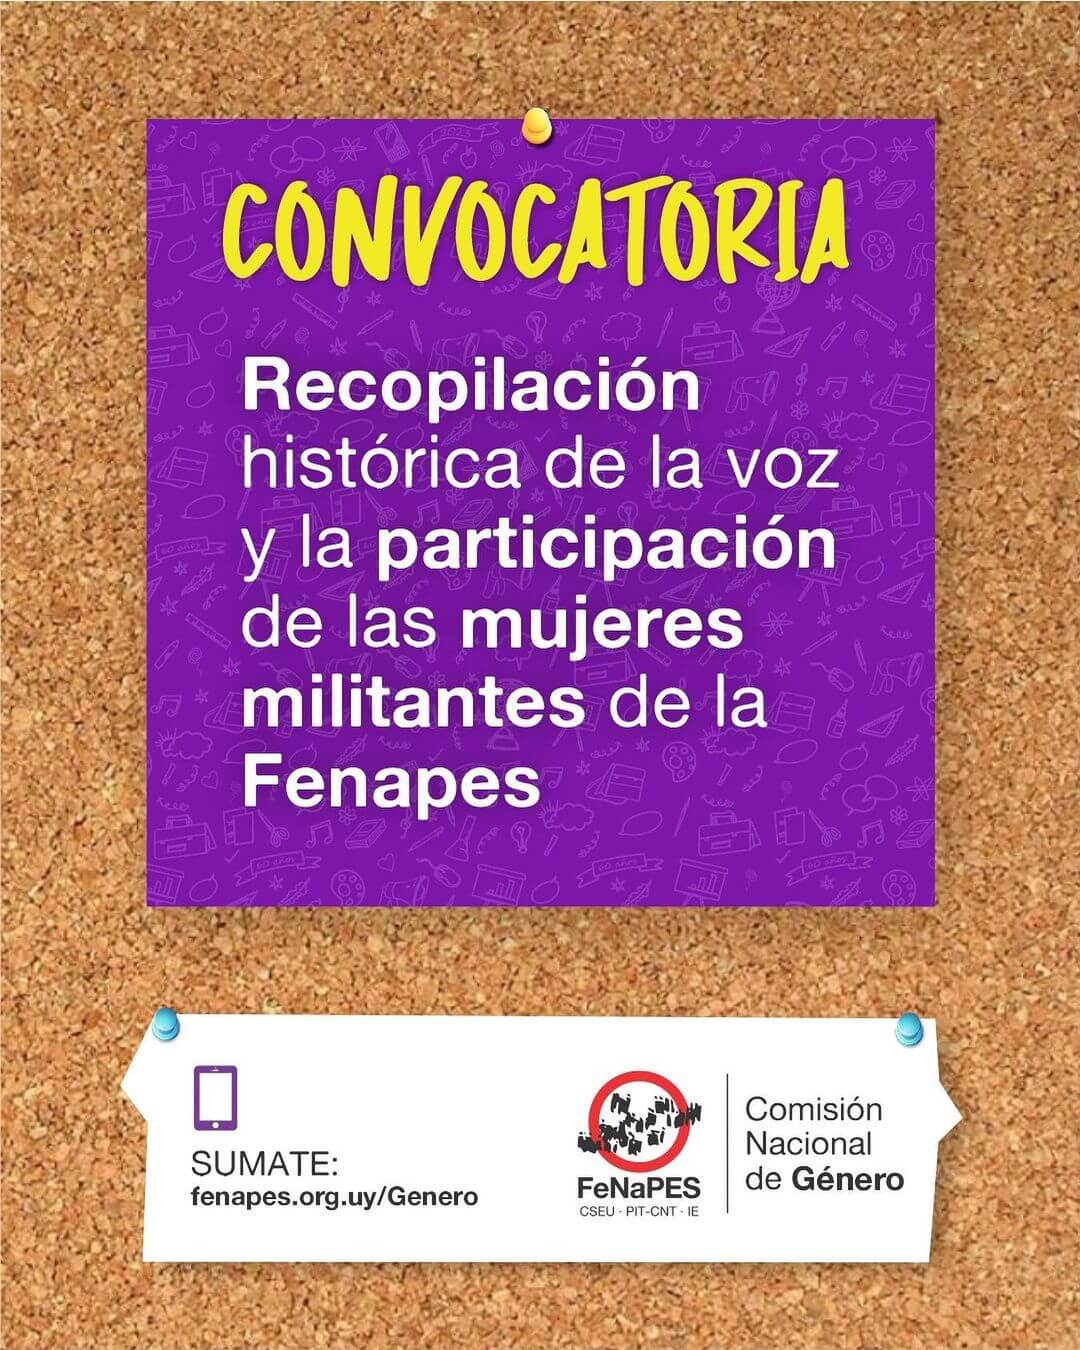 Recopilación histórica mujeres en FeNaPES